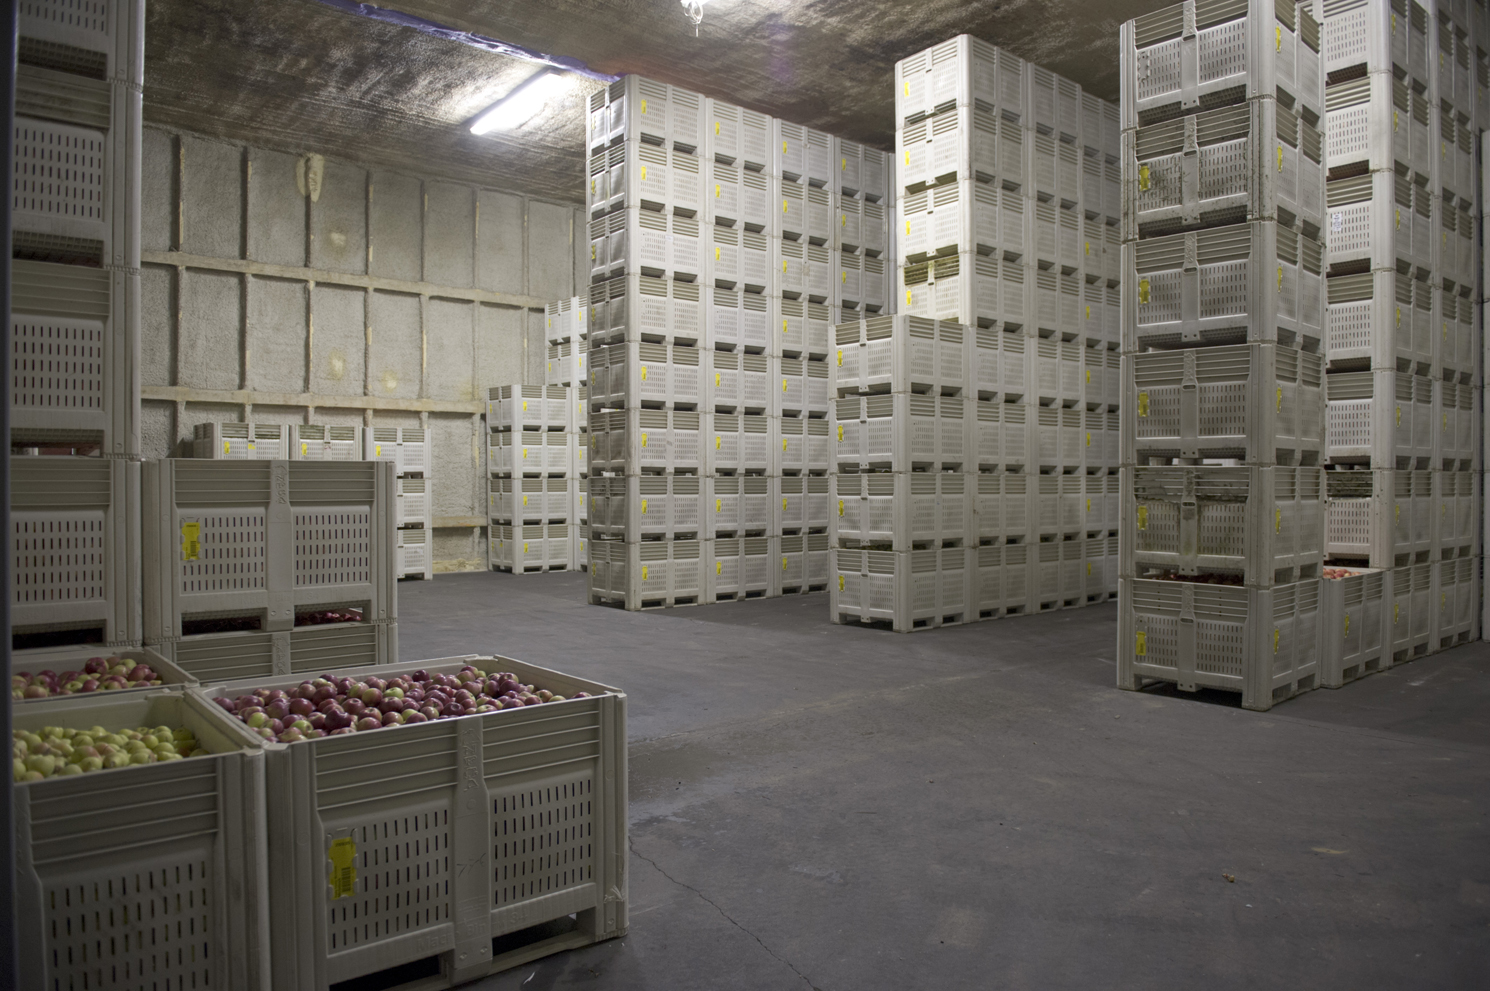 Хранение сх. Хранение фруктов на складе. Холодильный склад. Хранение овощей и фруктов на складах. Холодильный склад для яблок.